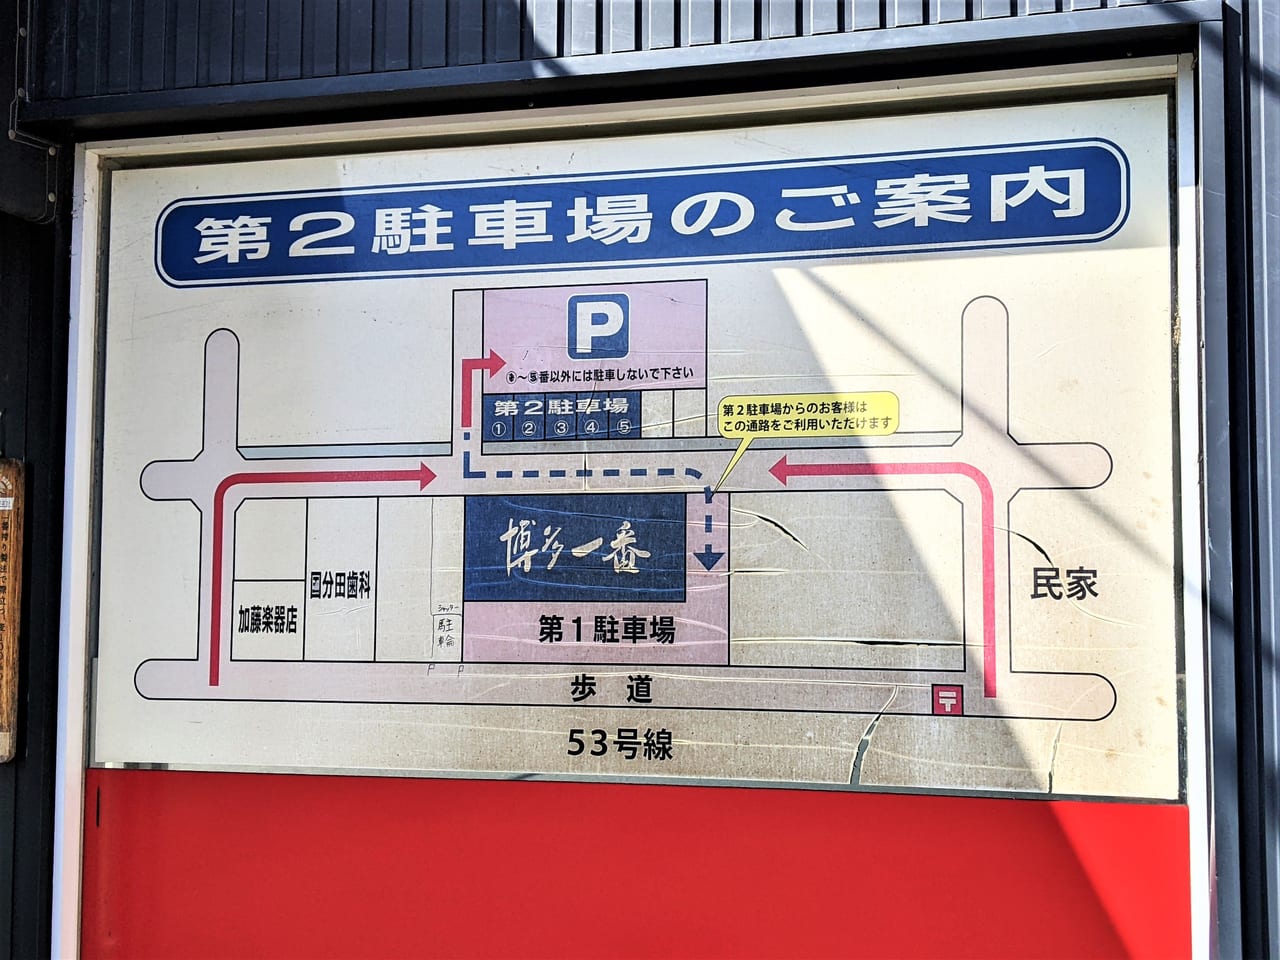 「博多一番 津島店」の駐車場の案内